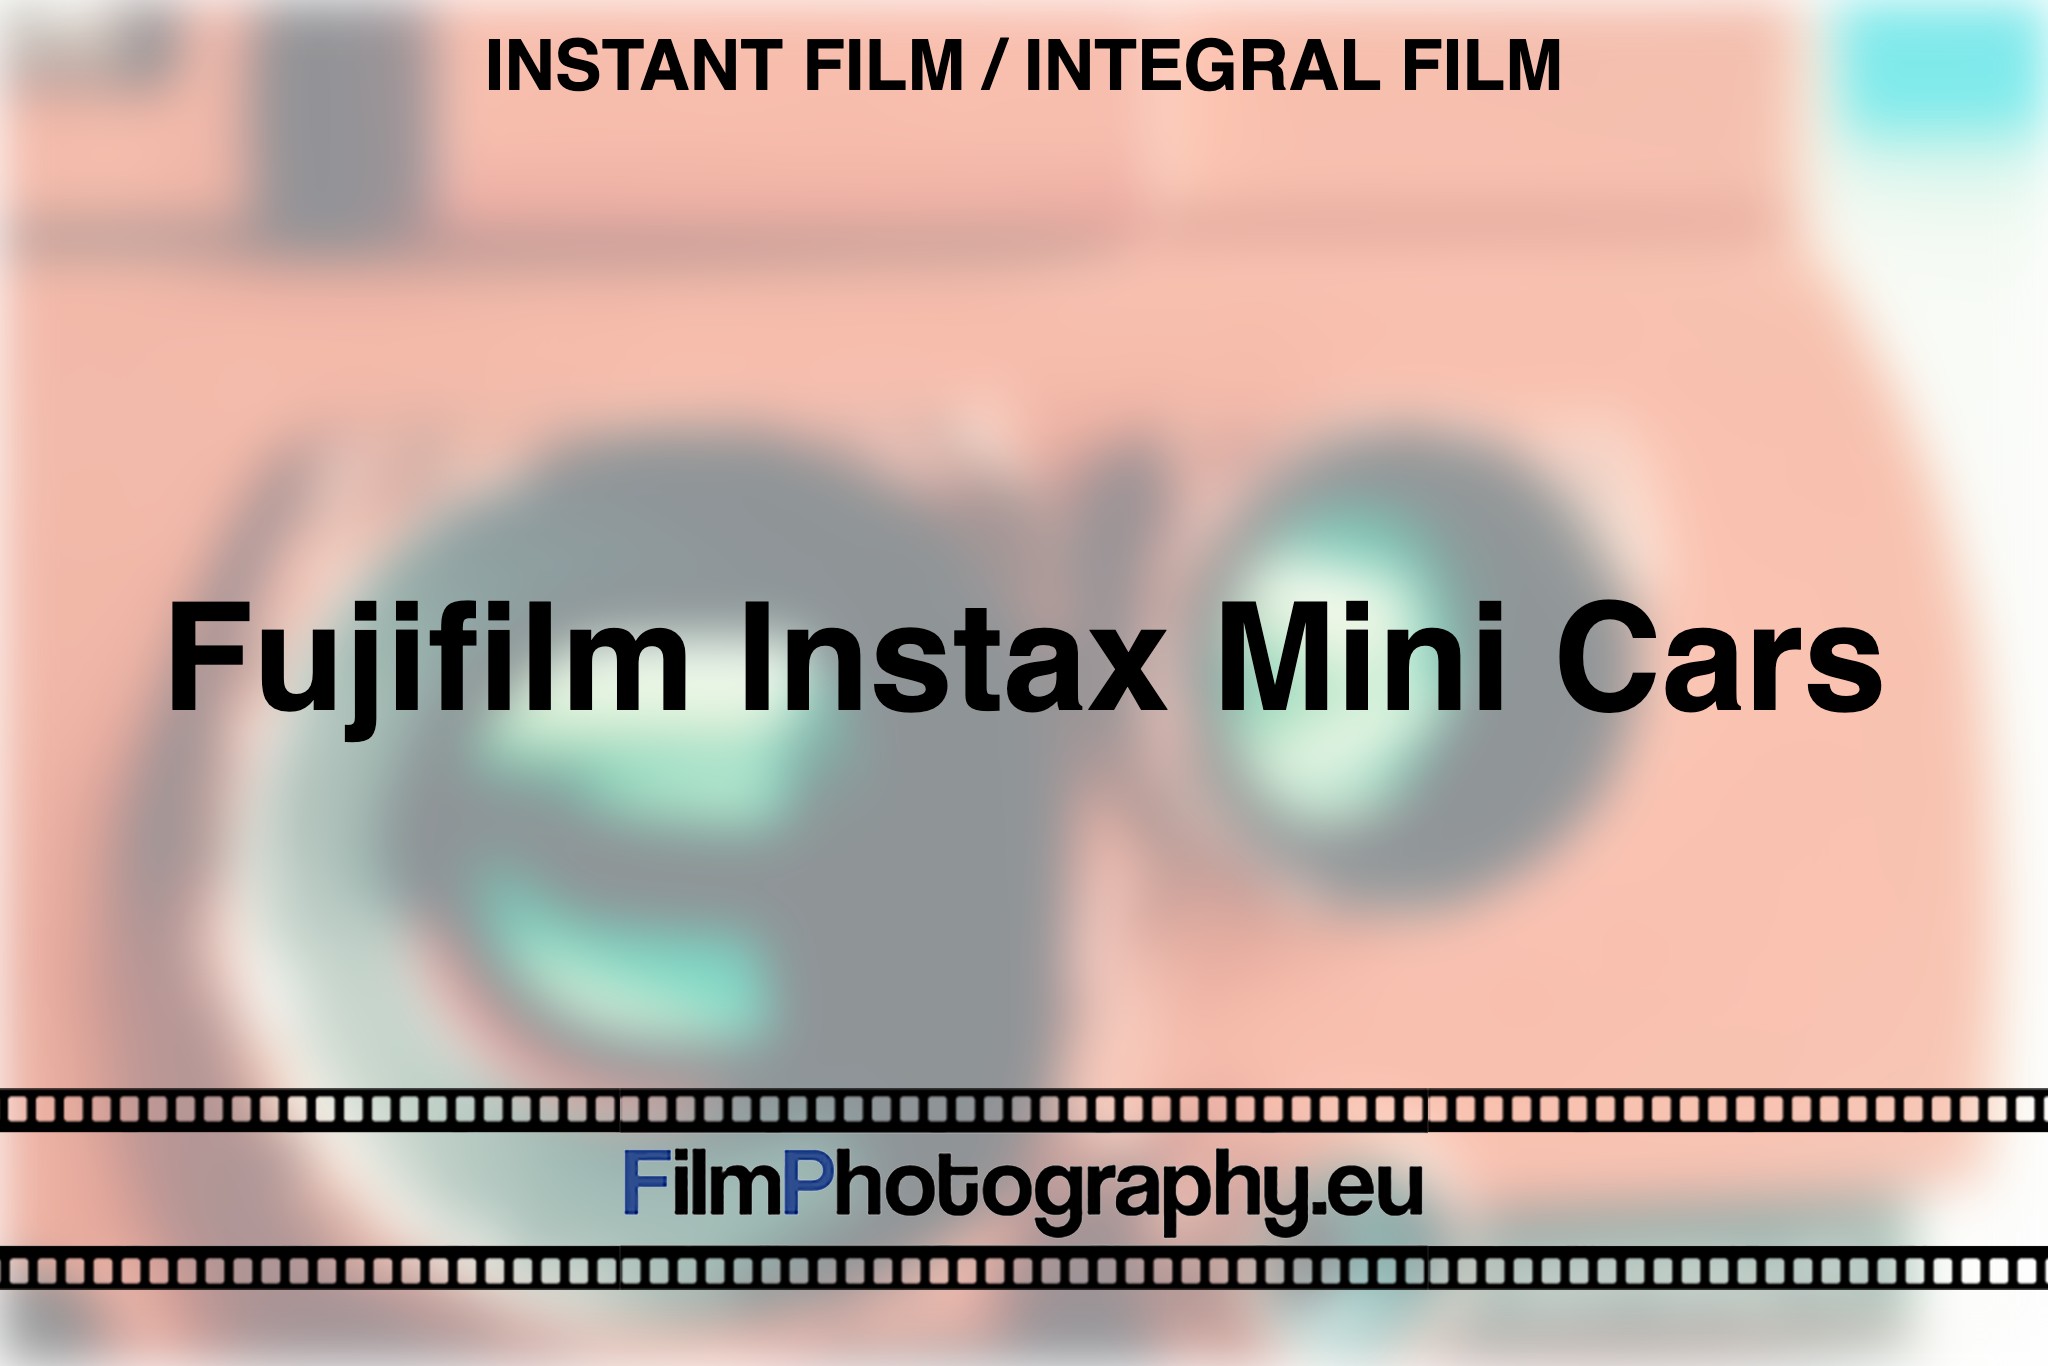 fujifilm-instax-mini-cars-instant-film-integral-film-bnv